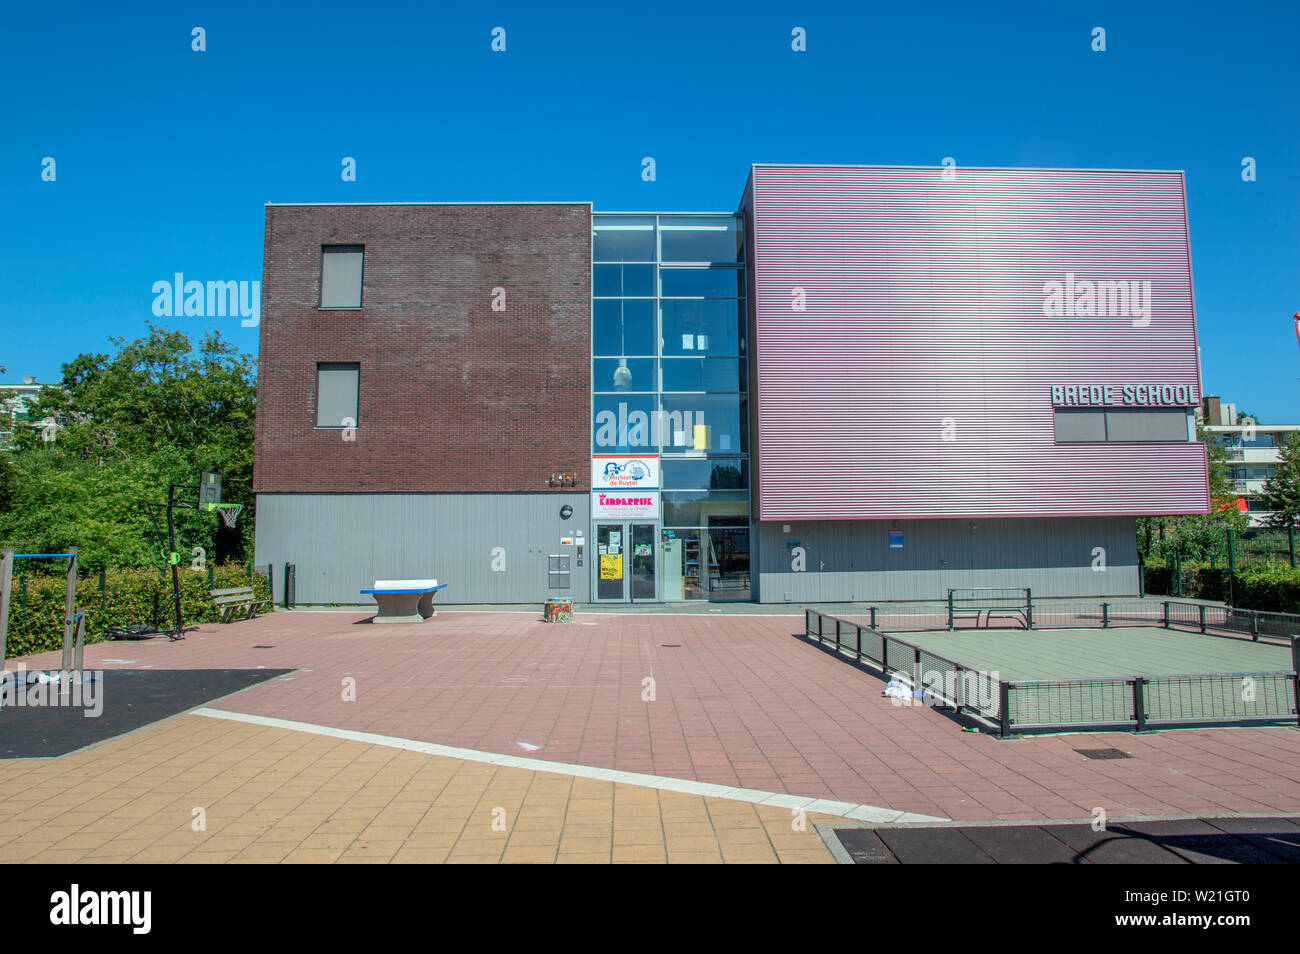 Brede School Michiel de Ruyter à Amstelveen Pays-Bas 2019 Banque D'Images